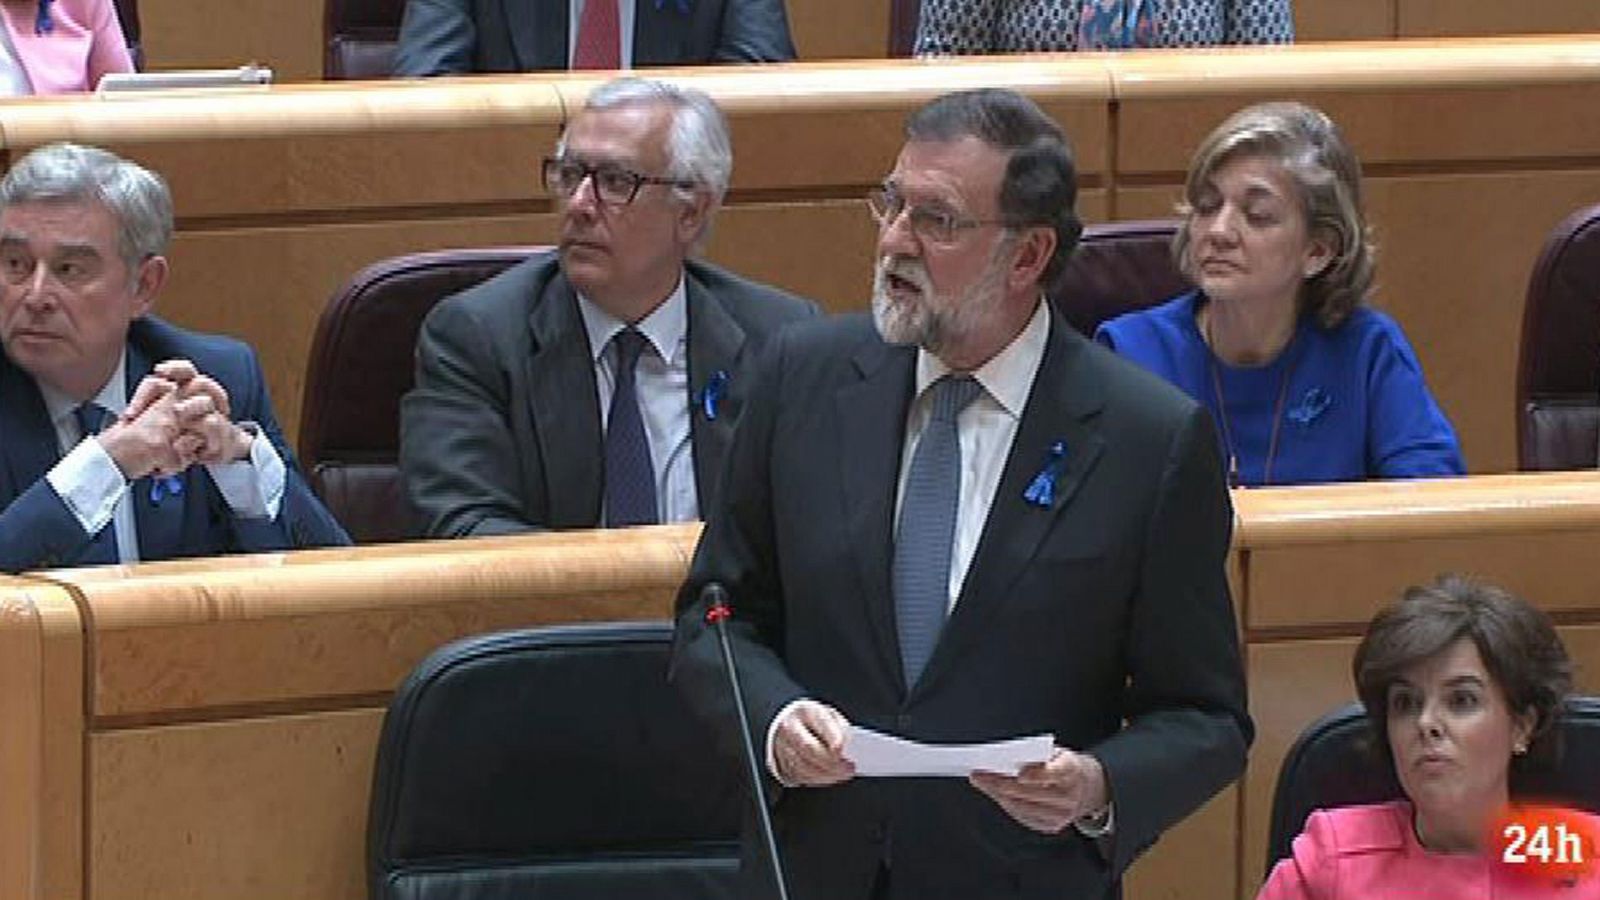 Rajoy defiende el sistema judicial español porque es "garantía de derecho y libertades